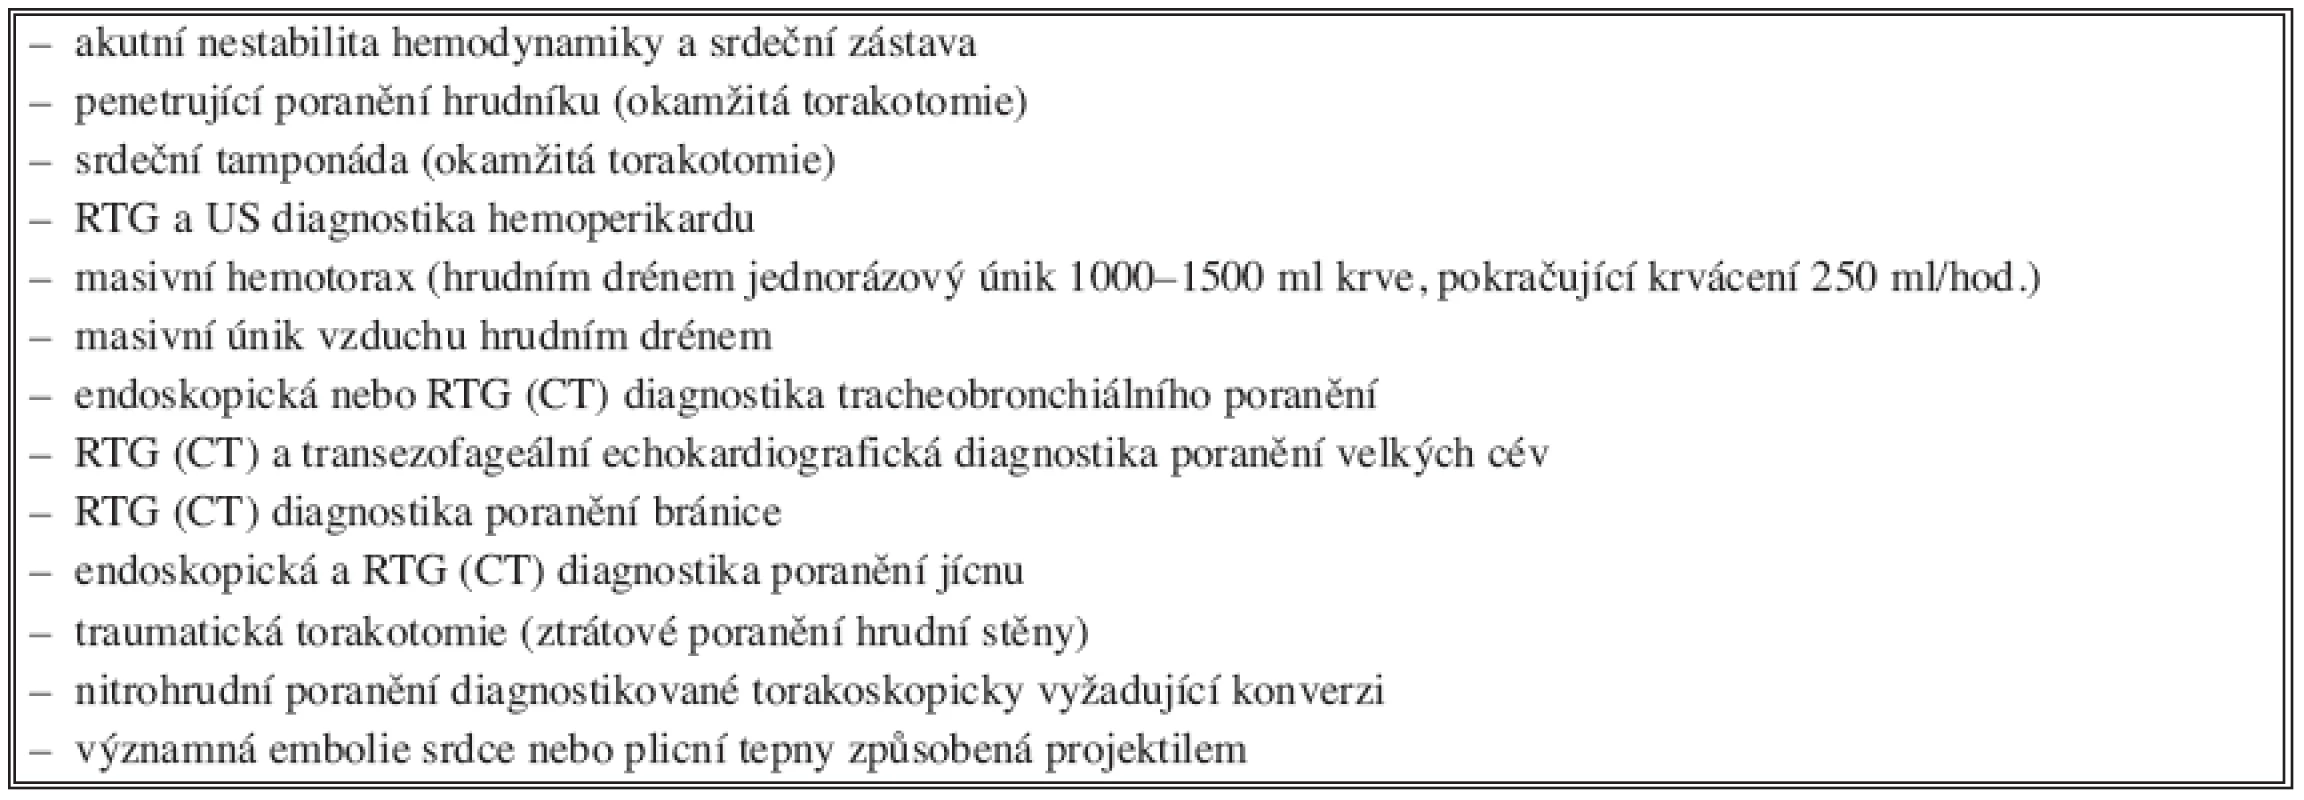 Akutní indikace k torakotomii (u tupého a penetrujícího poranění hrudníku)
Tab. 4. Indication for emergency thoracotomy (in blunt and penetrating thoracic injuries)